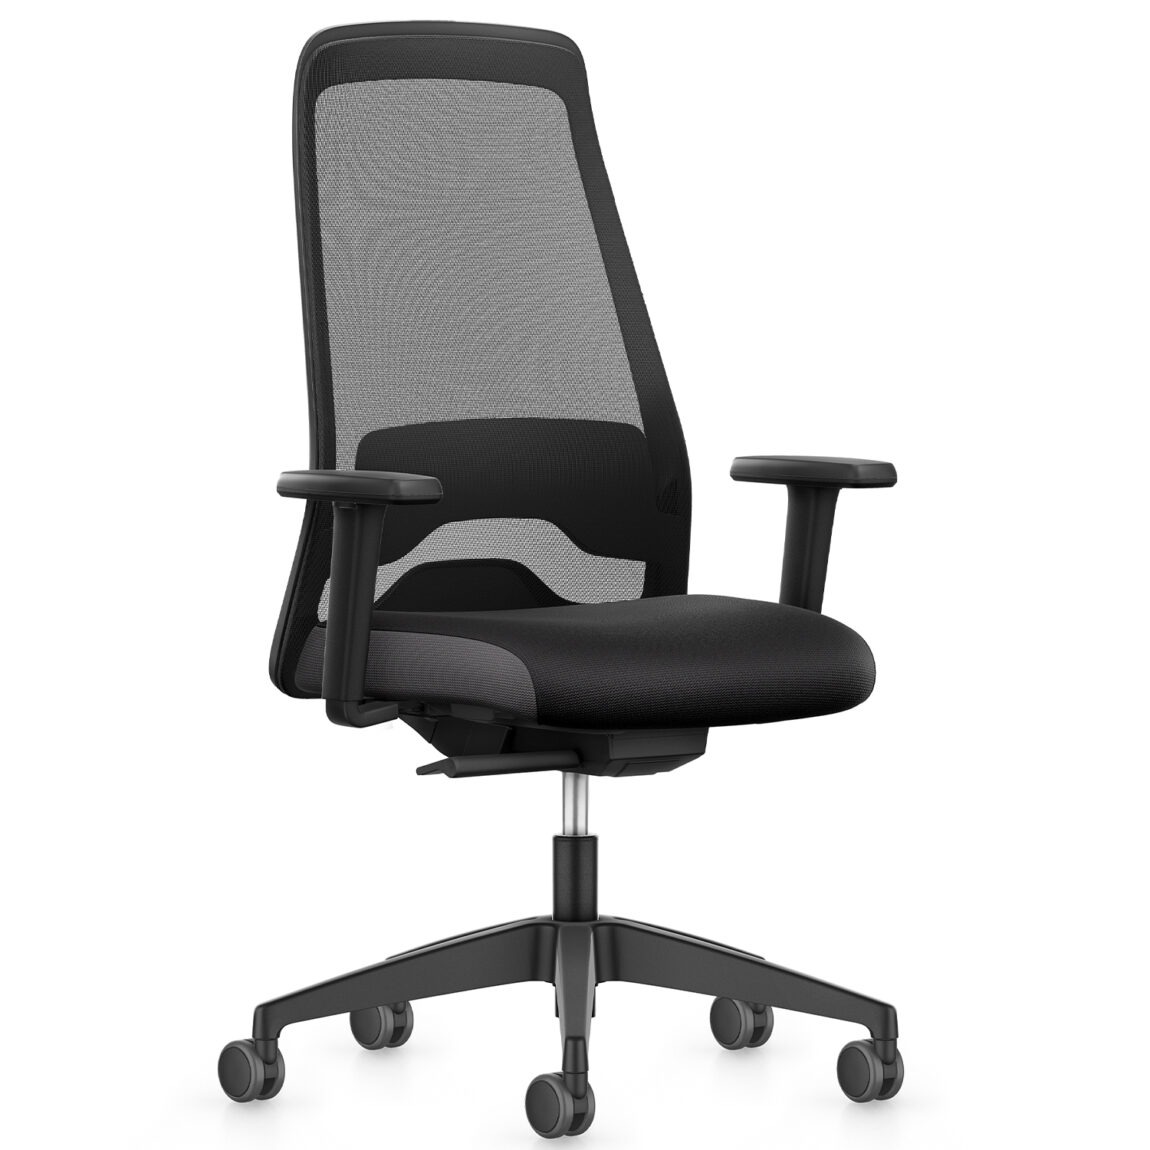 Interstuhl designové kancelářské židle